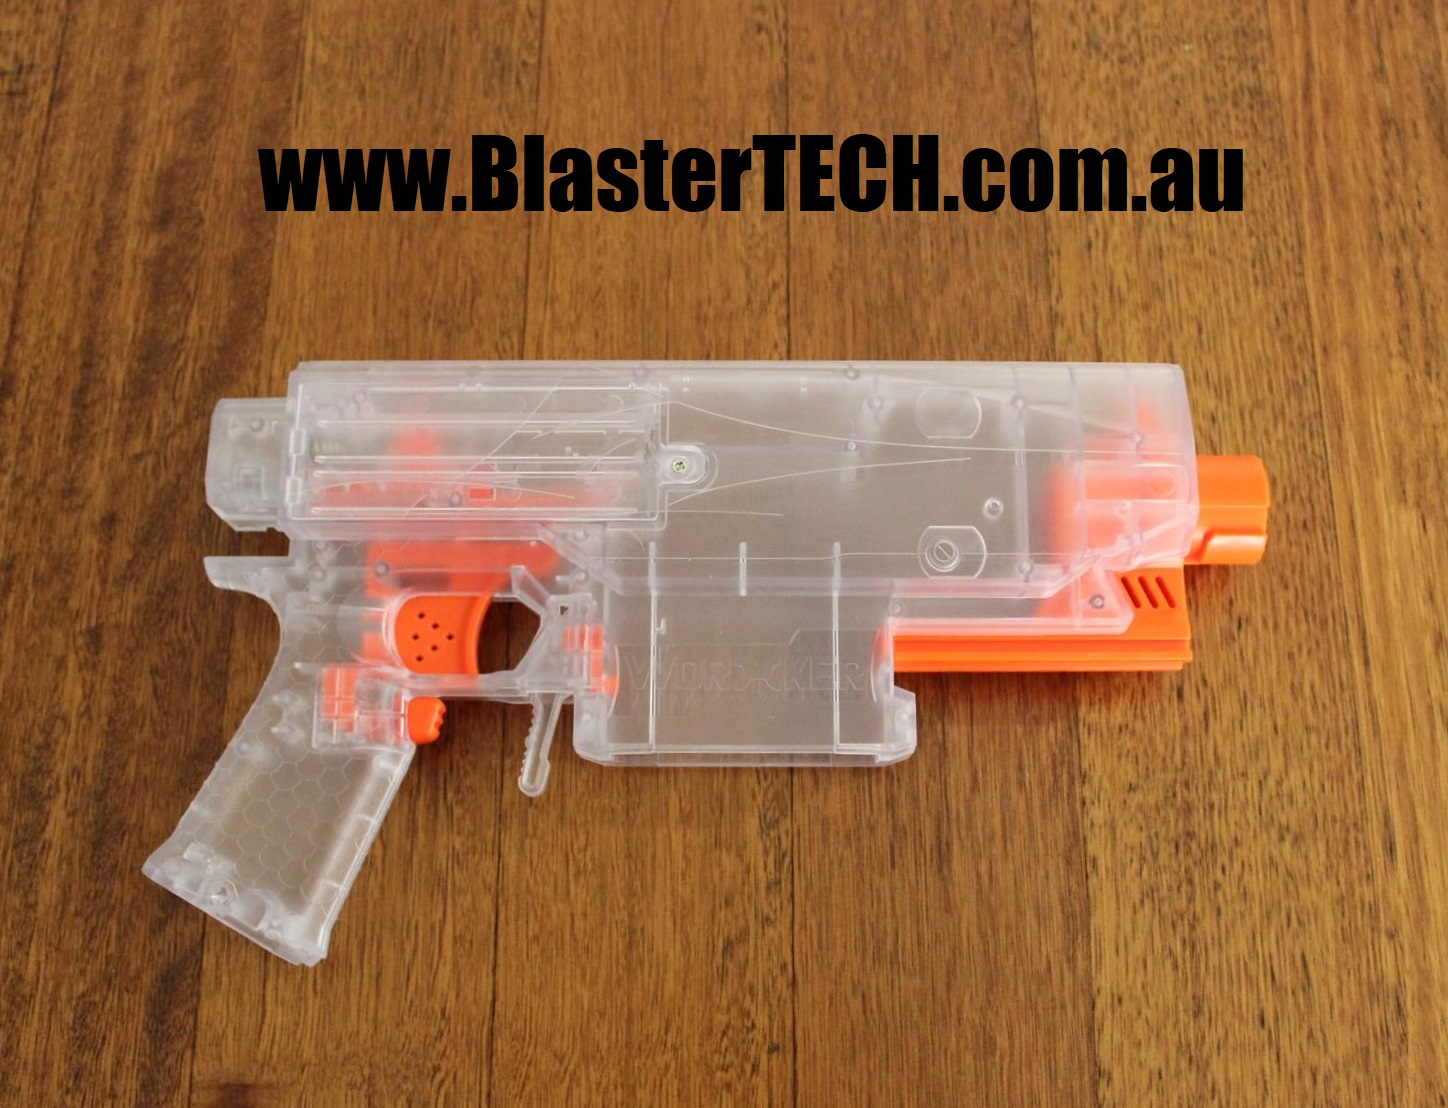 www.blastertech.com.au